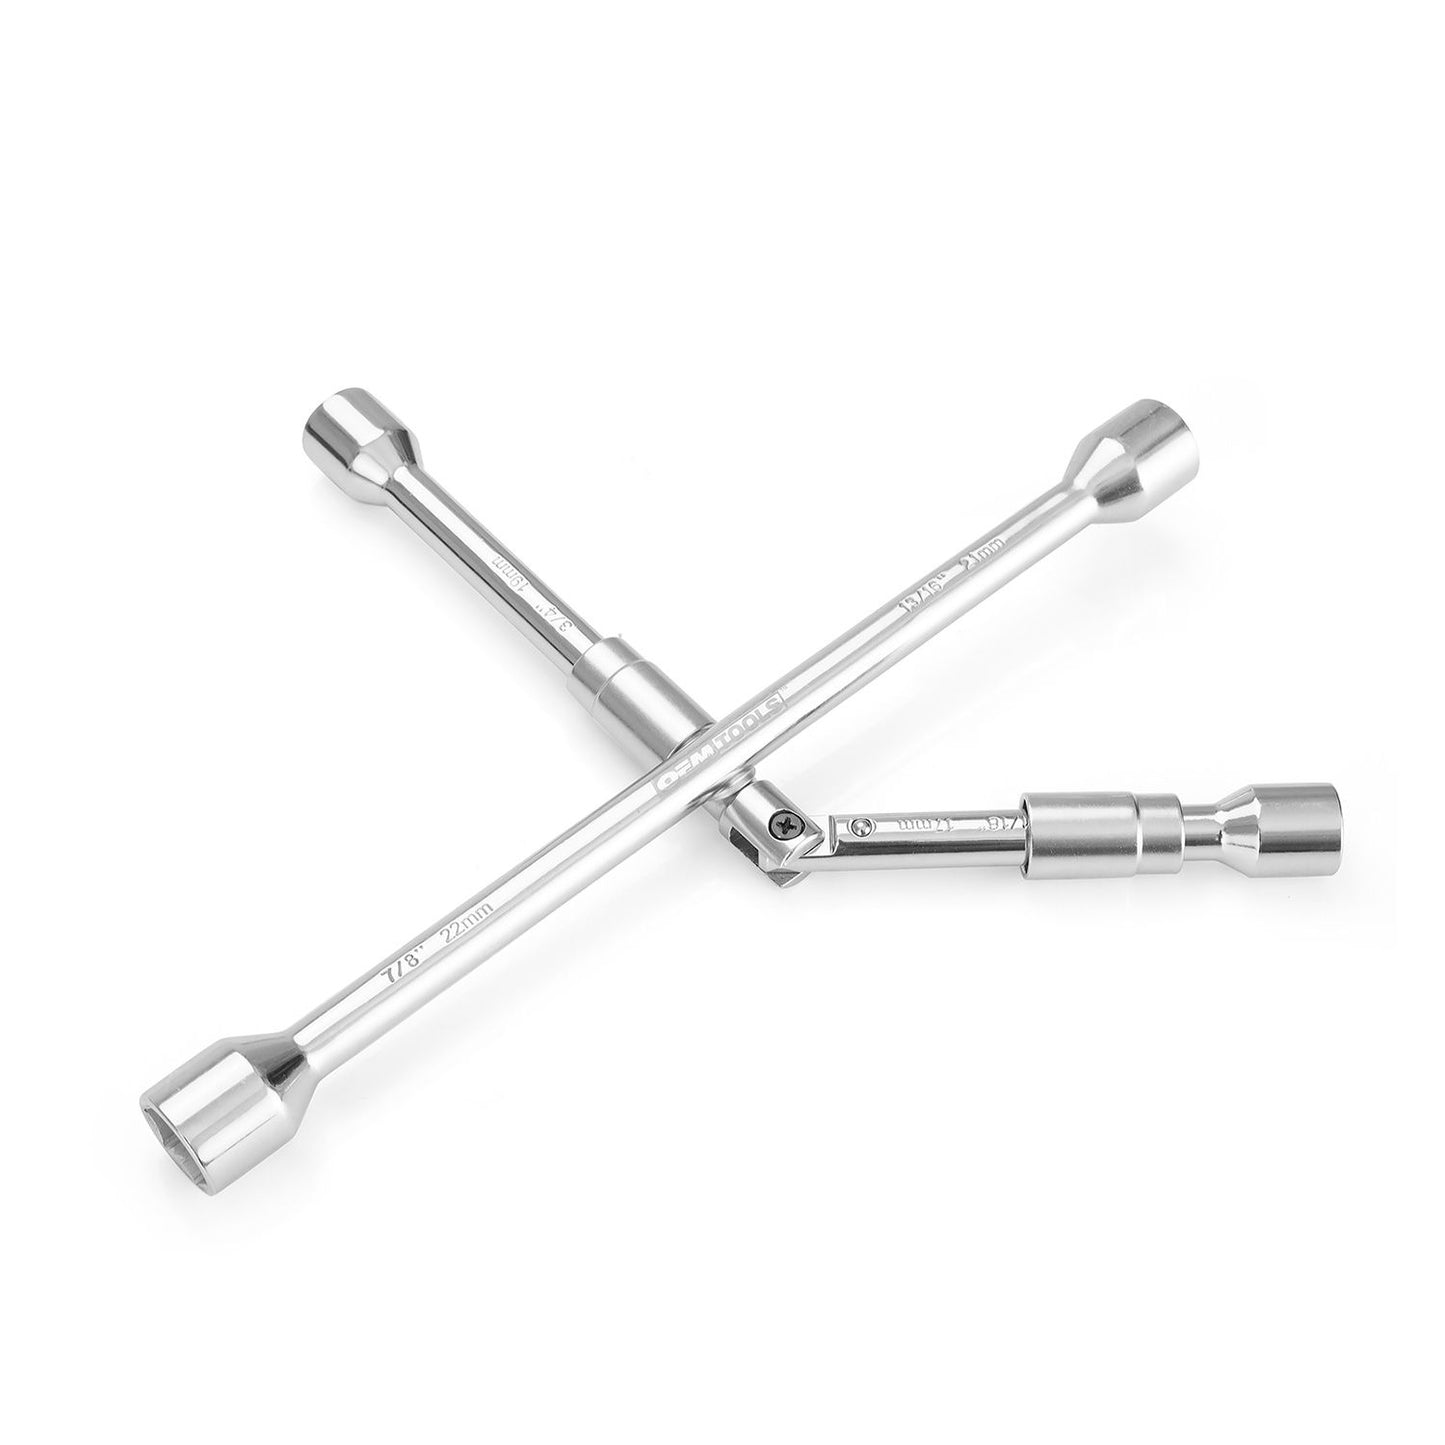 OEMTOOLS 20563 4-Way Folding Lug Nut Wrench  14"